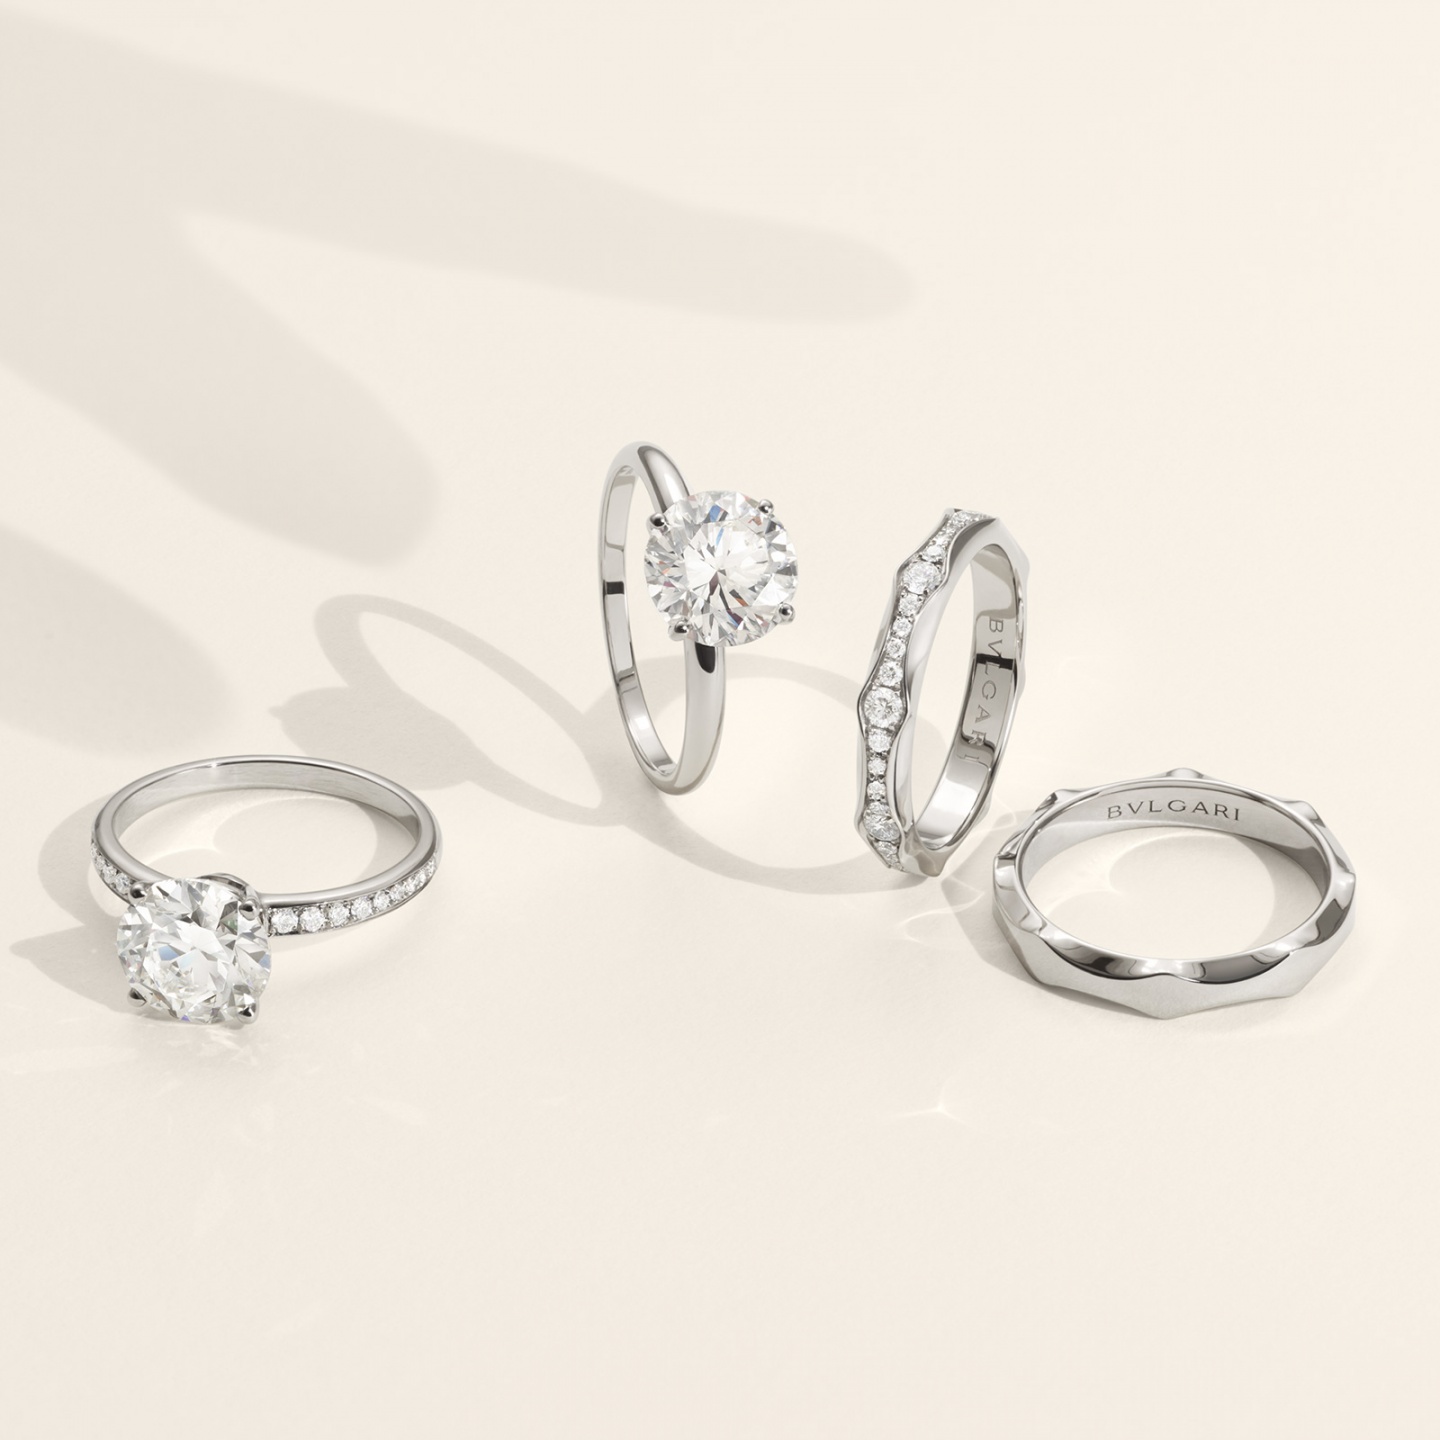 BVLGARI 婚約指輪 ダイヤモンド - アクセサリー